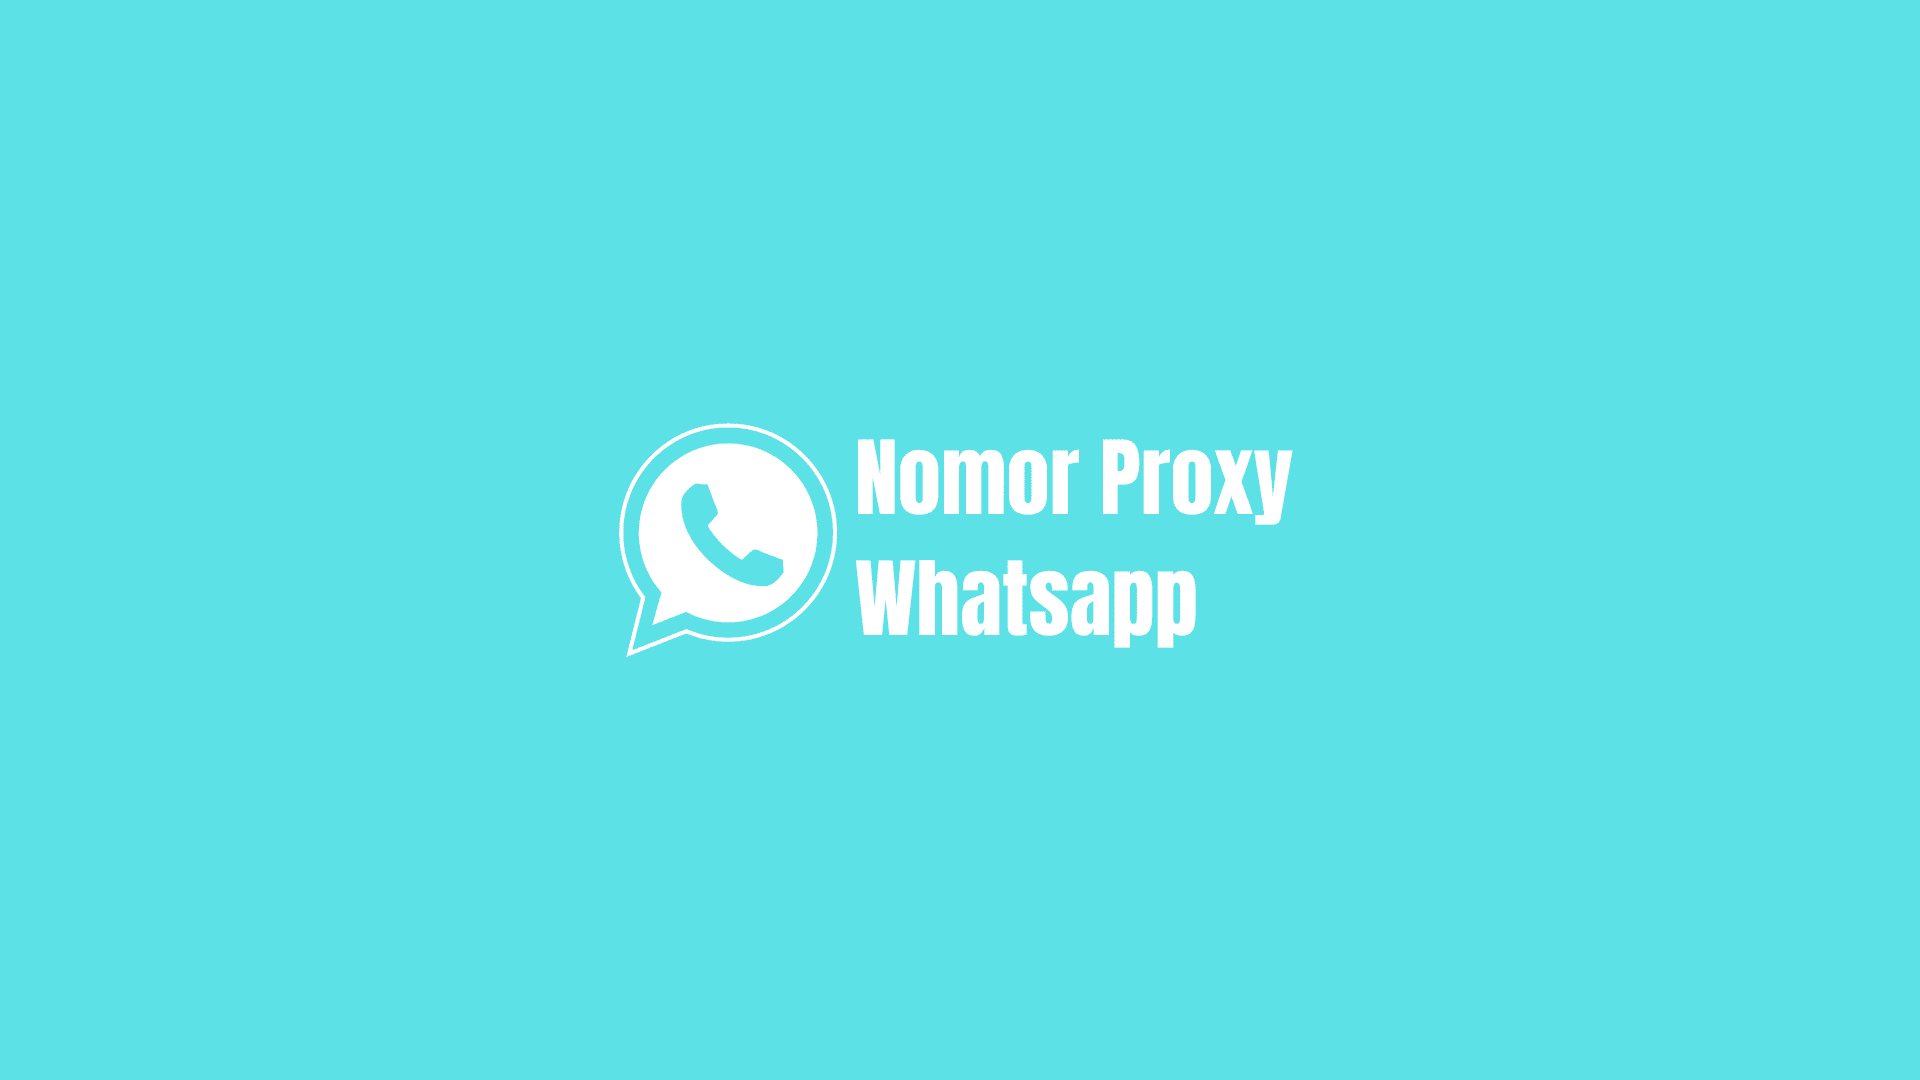 nomor proxy whatsapp